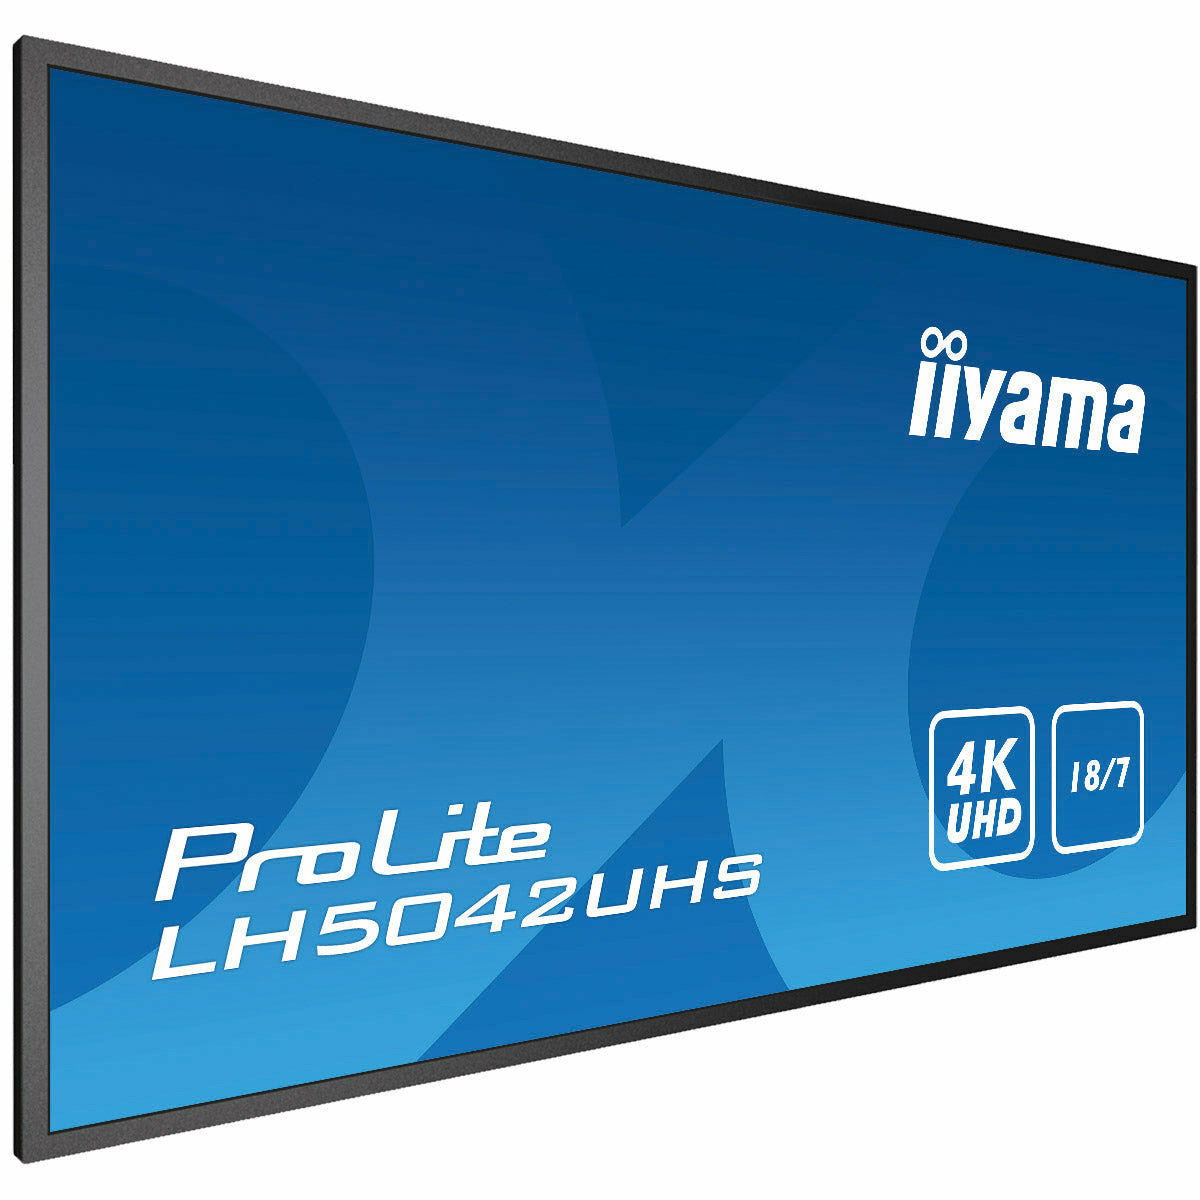 iiyama ProLite LH5042UHS-B3 50" 18/7 with Android 8.0 and iiyama N-sign integrated Signage Platform